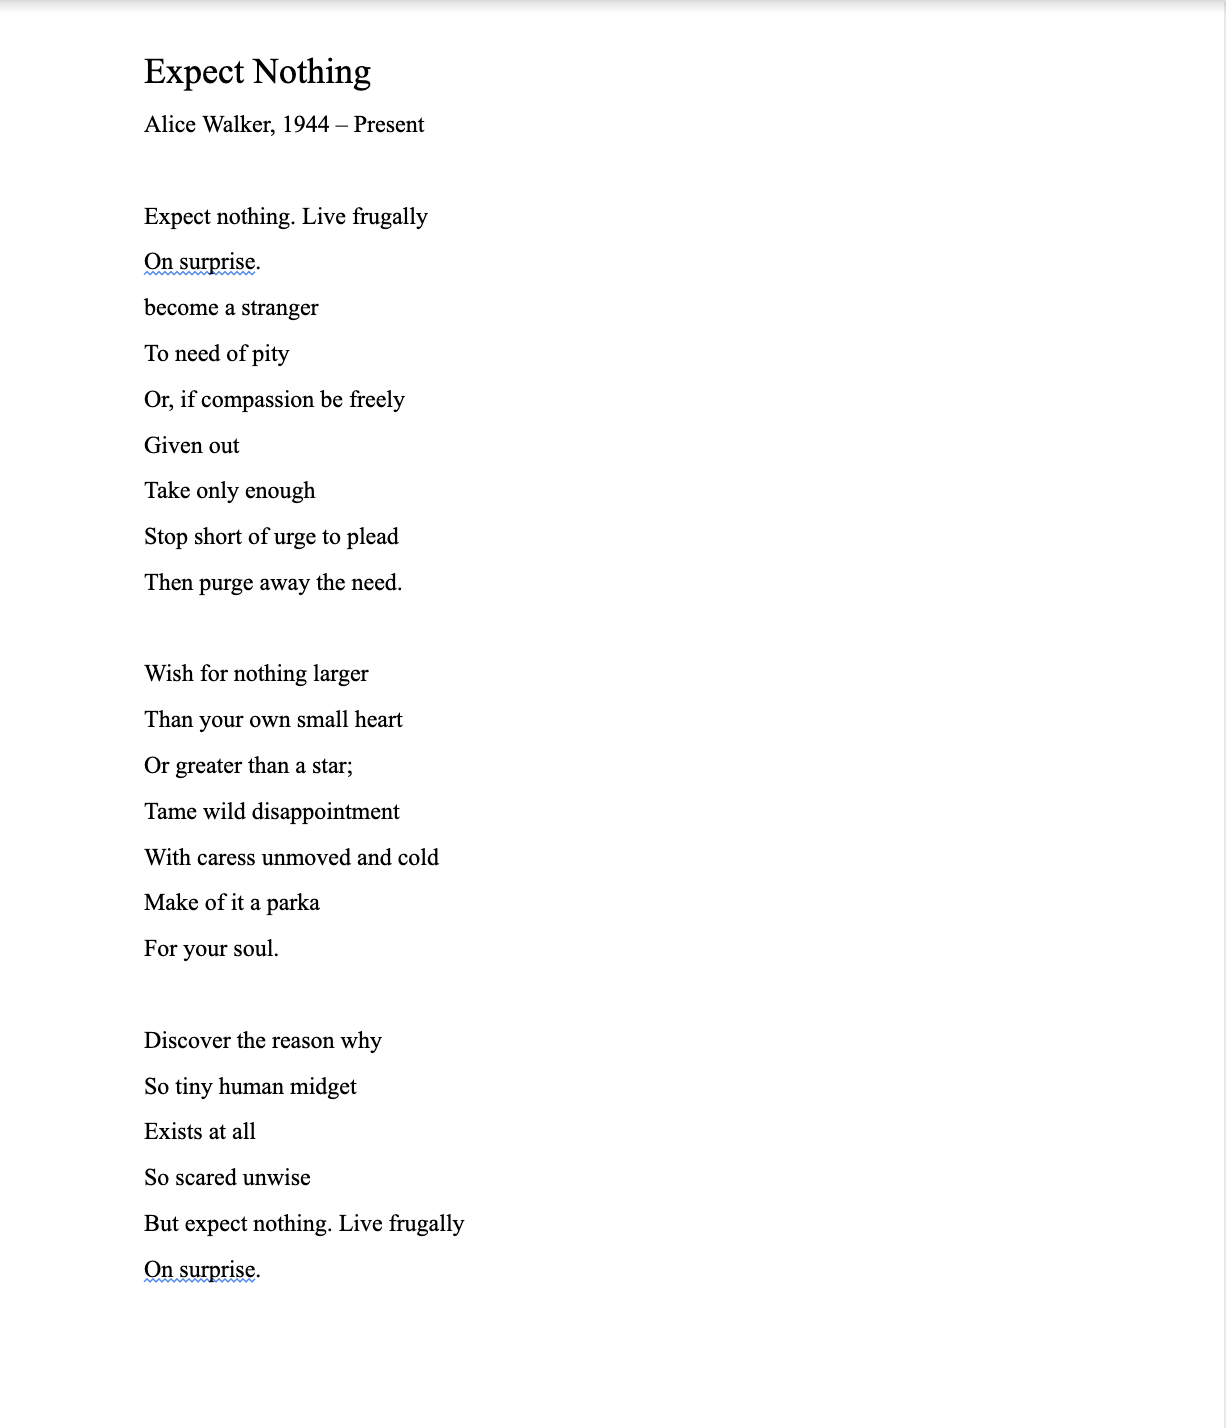 alice walker poem.png